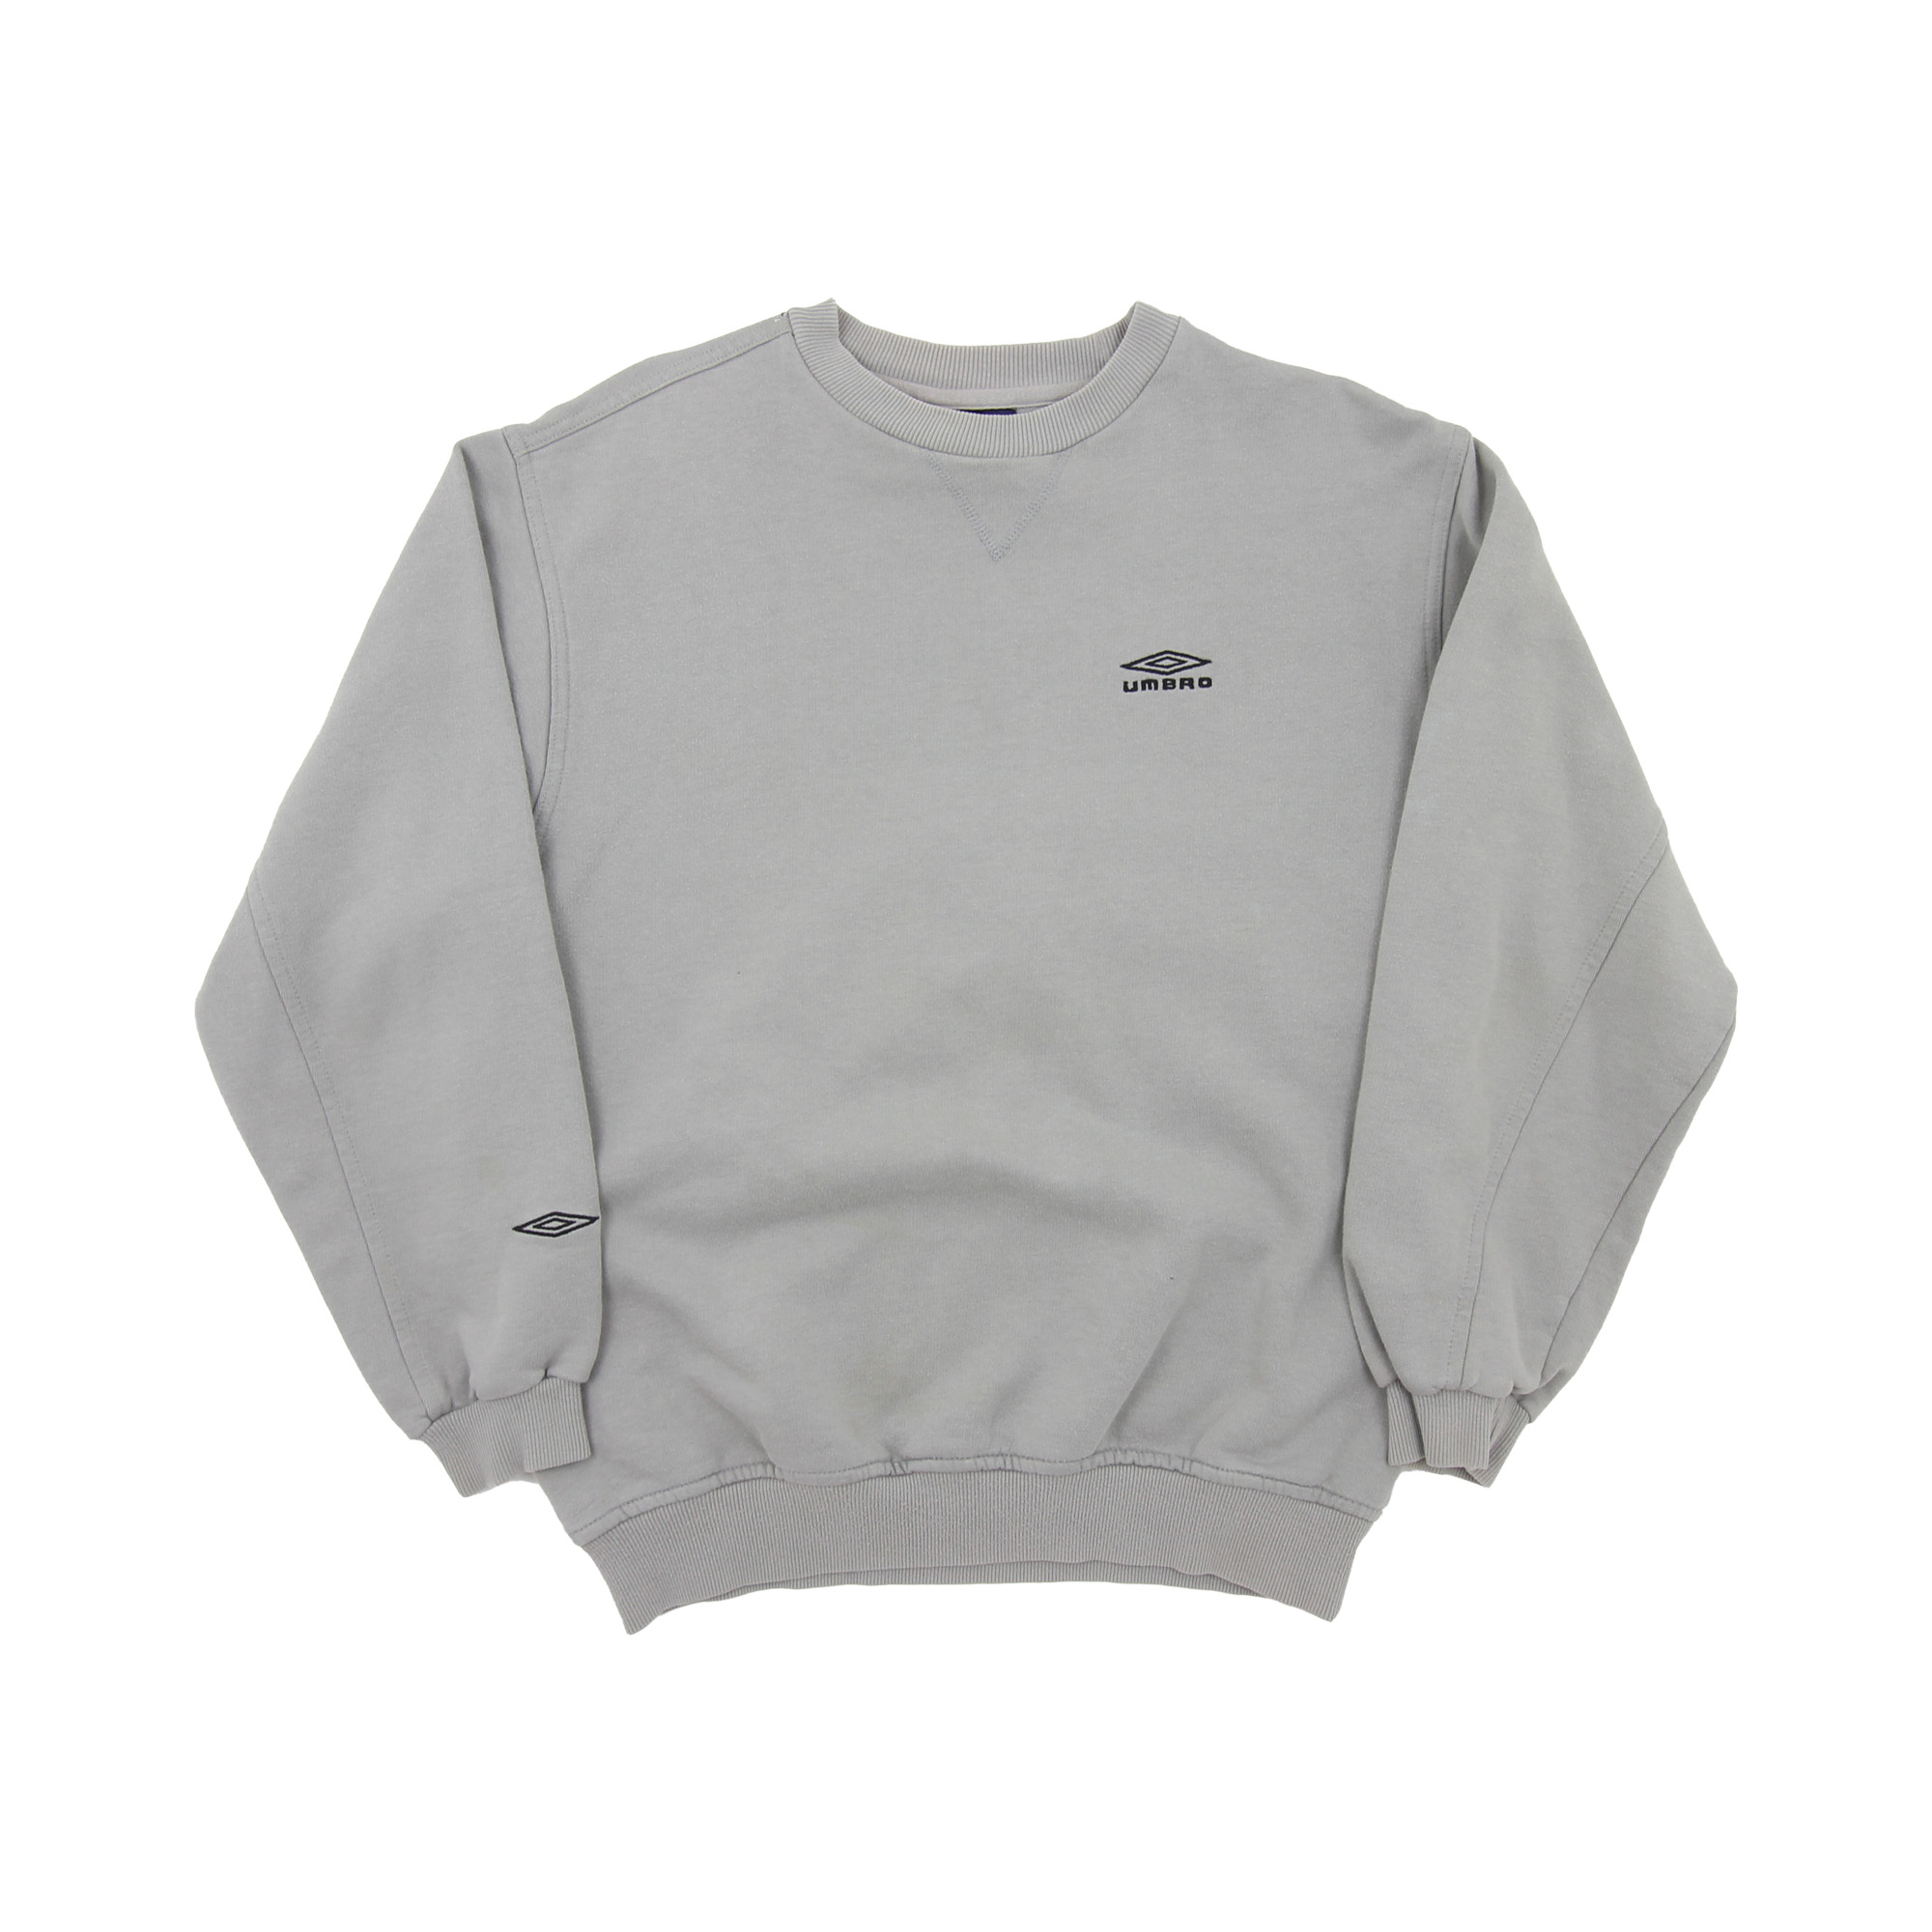 Umbro Sweatshirt Grey -  M